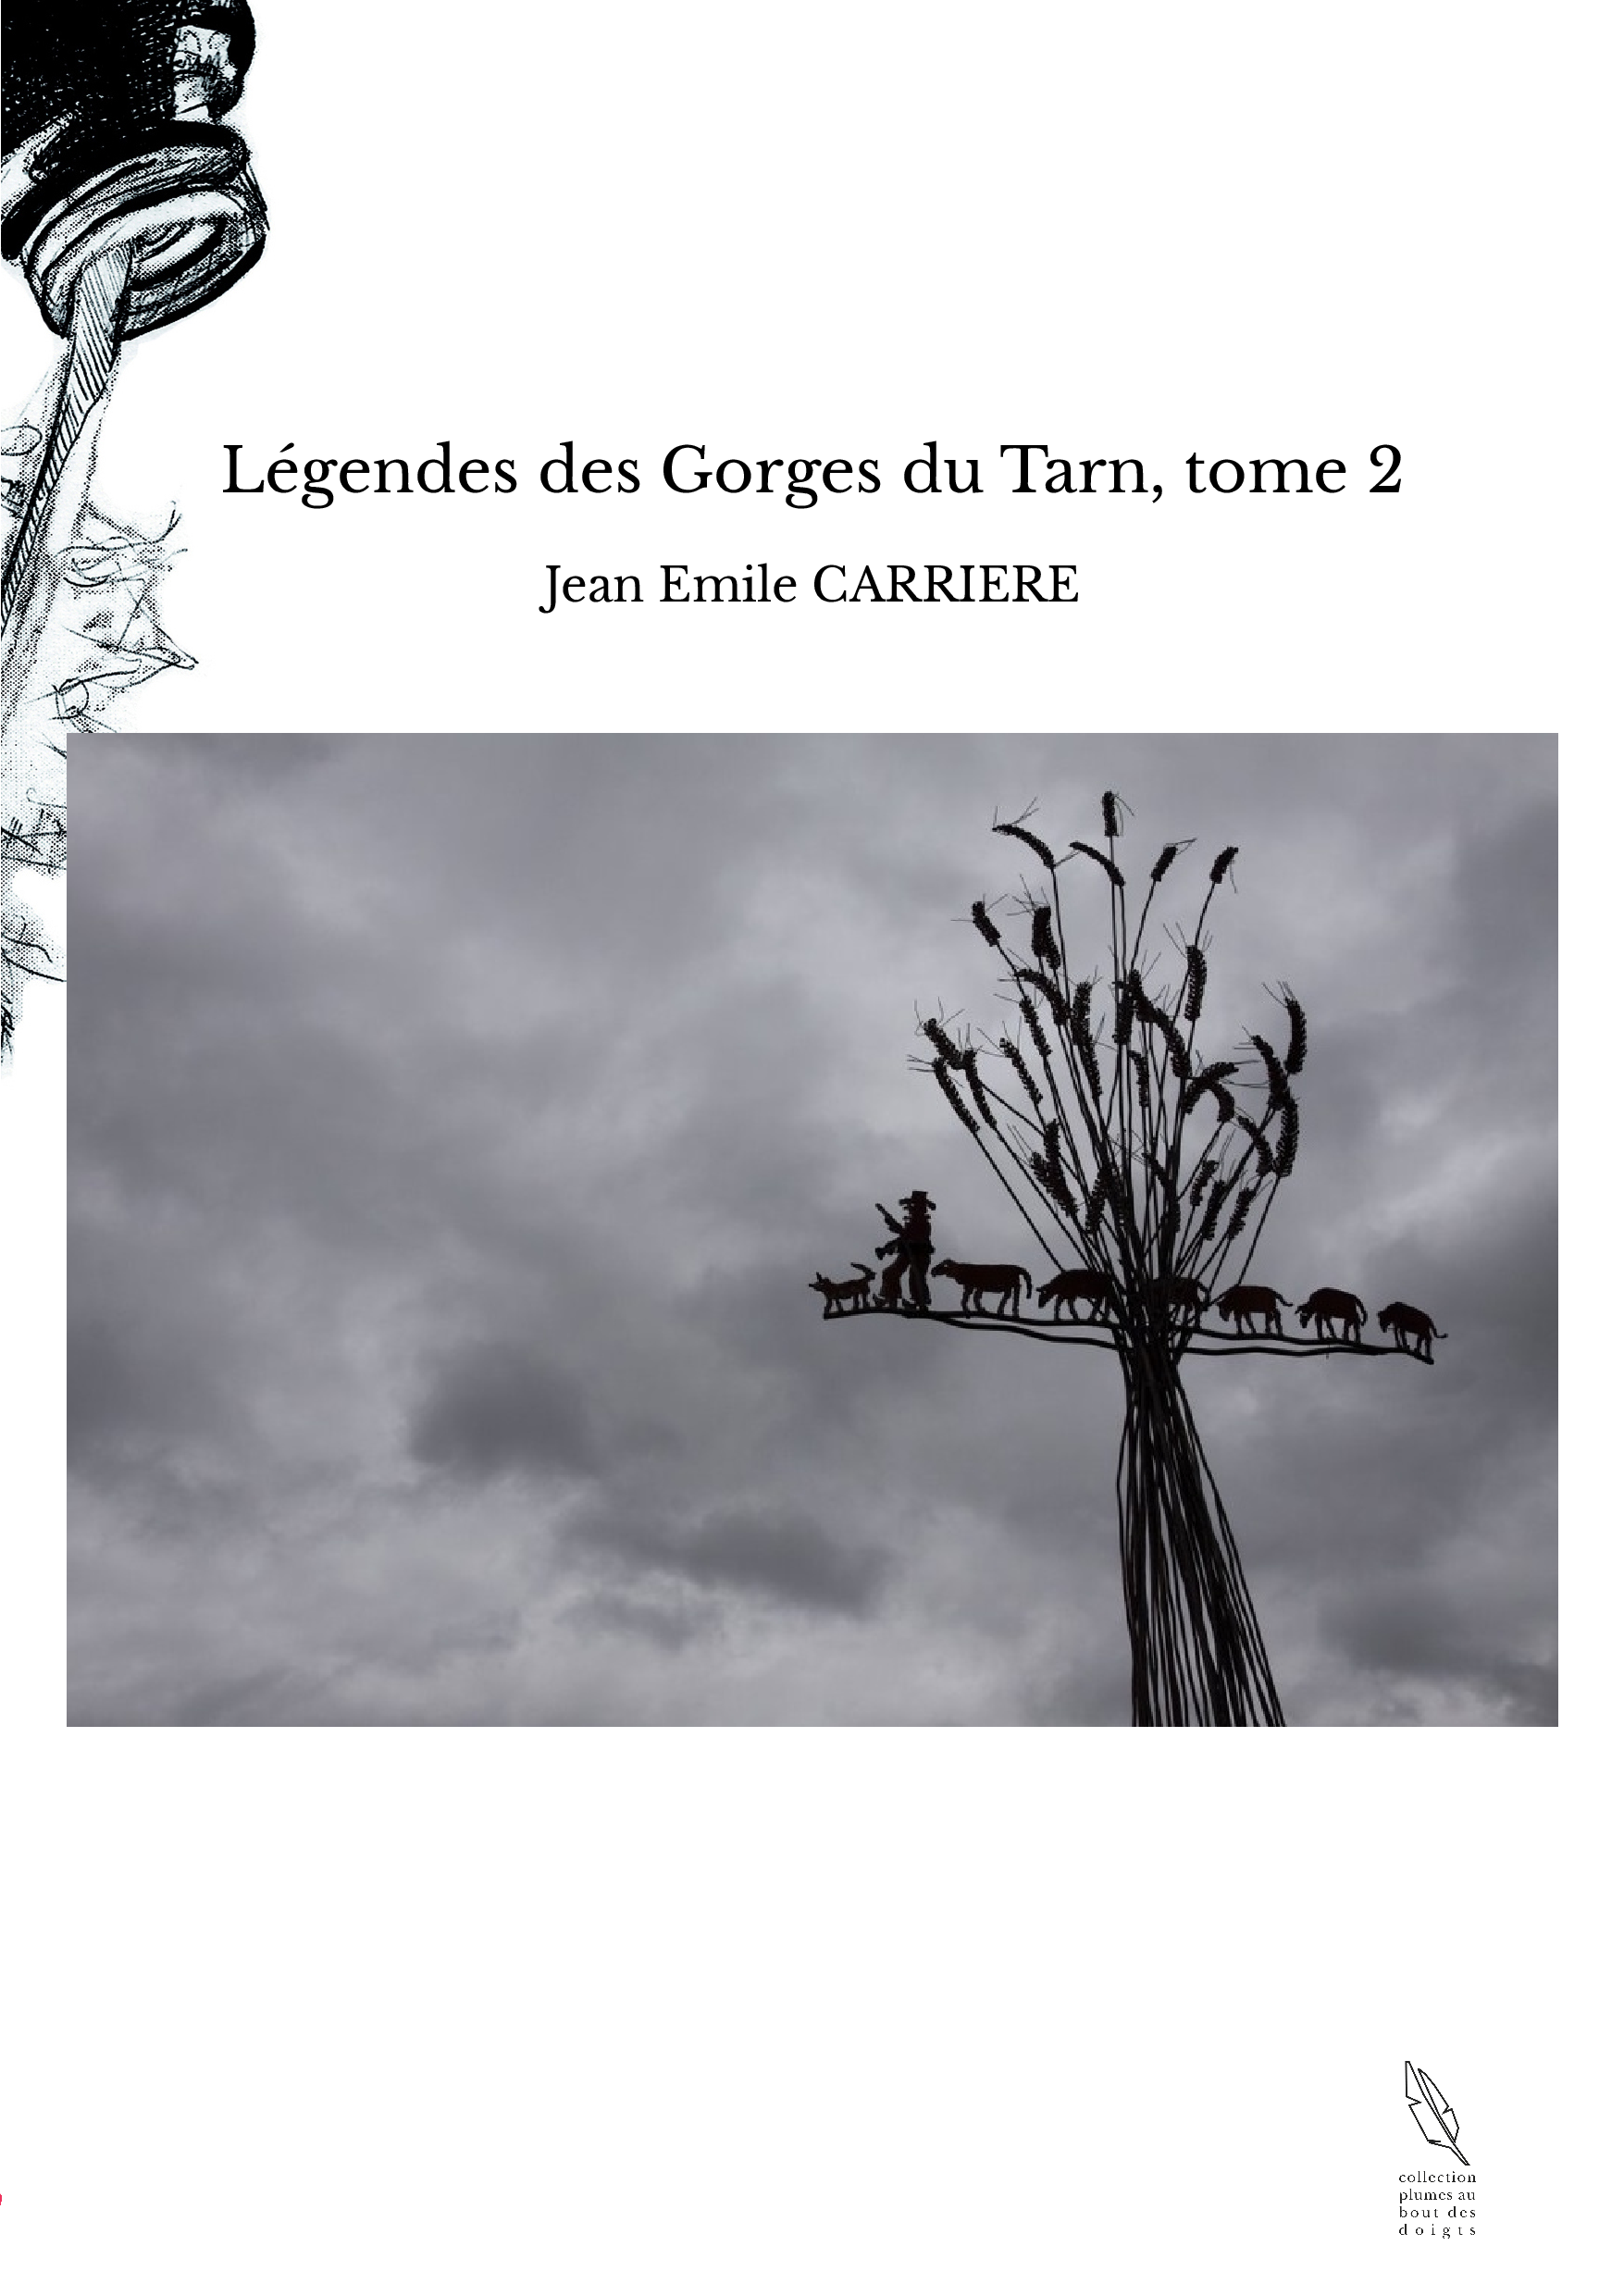 Légendes des Gorges du Tarn, tome 2